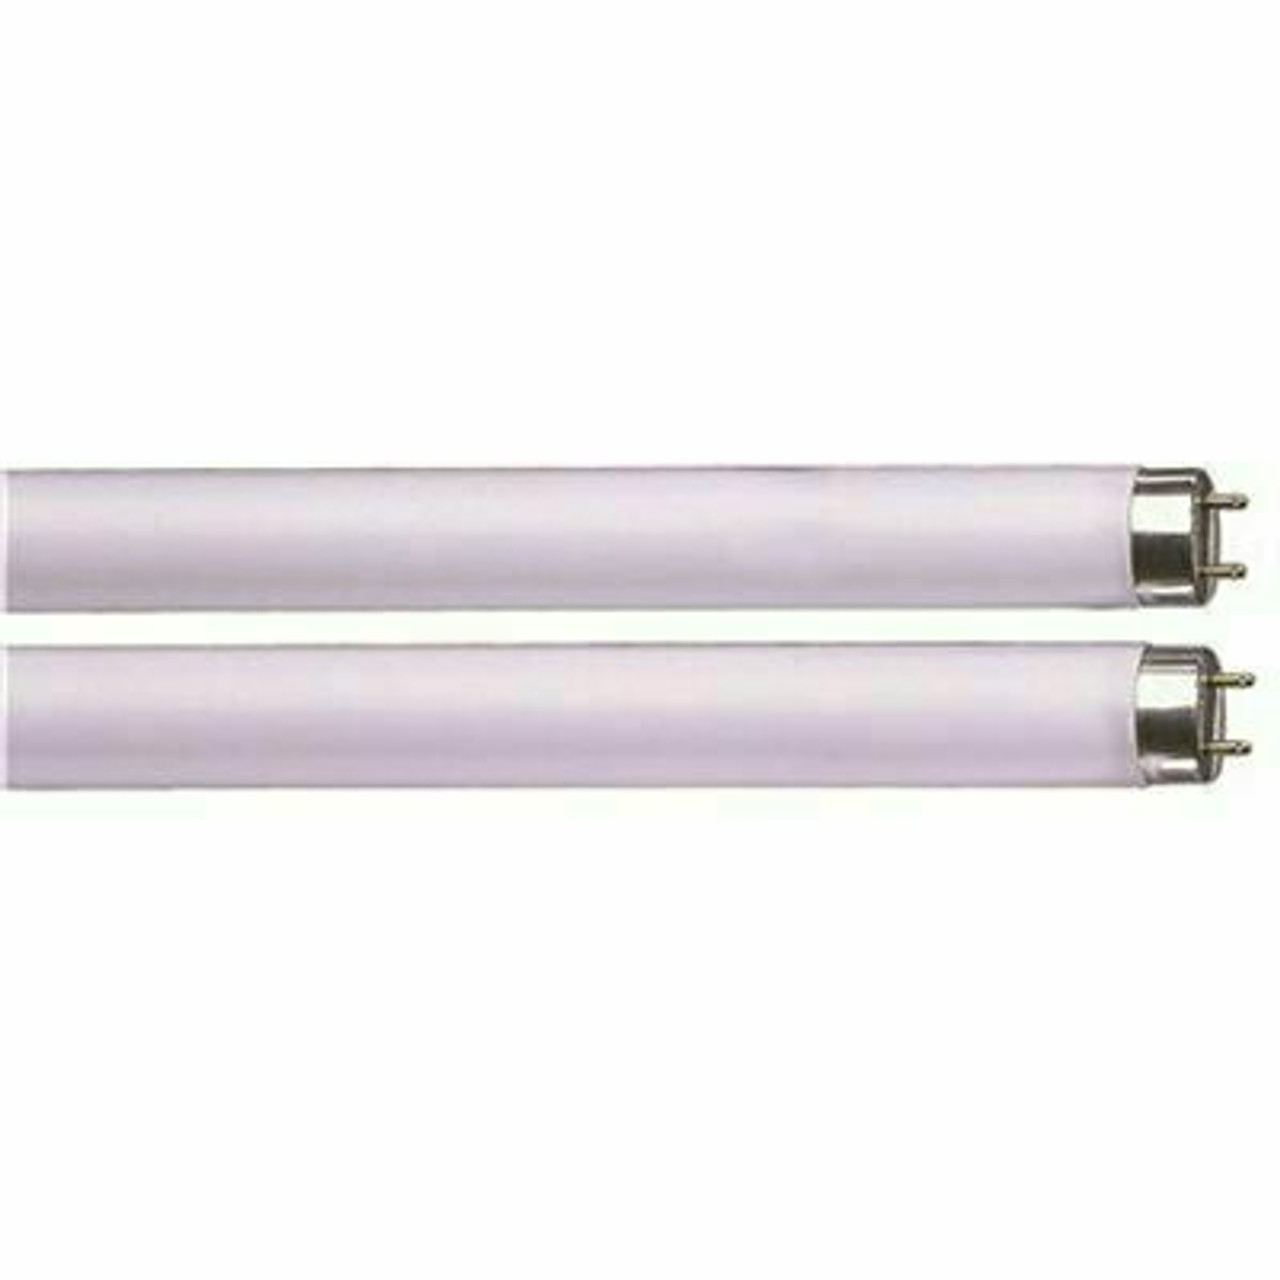 Sylvania 30-Watt 36 In. Sylvania Preheat Linear T8 Fluorescent Lamp, Cool White (24 Per Case)